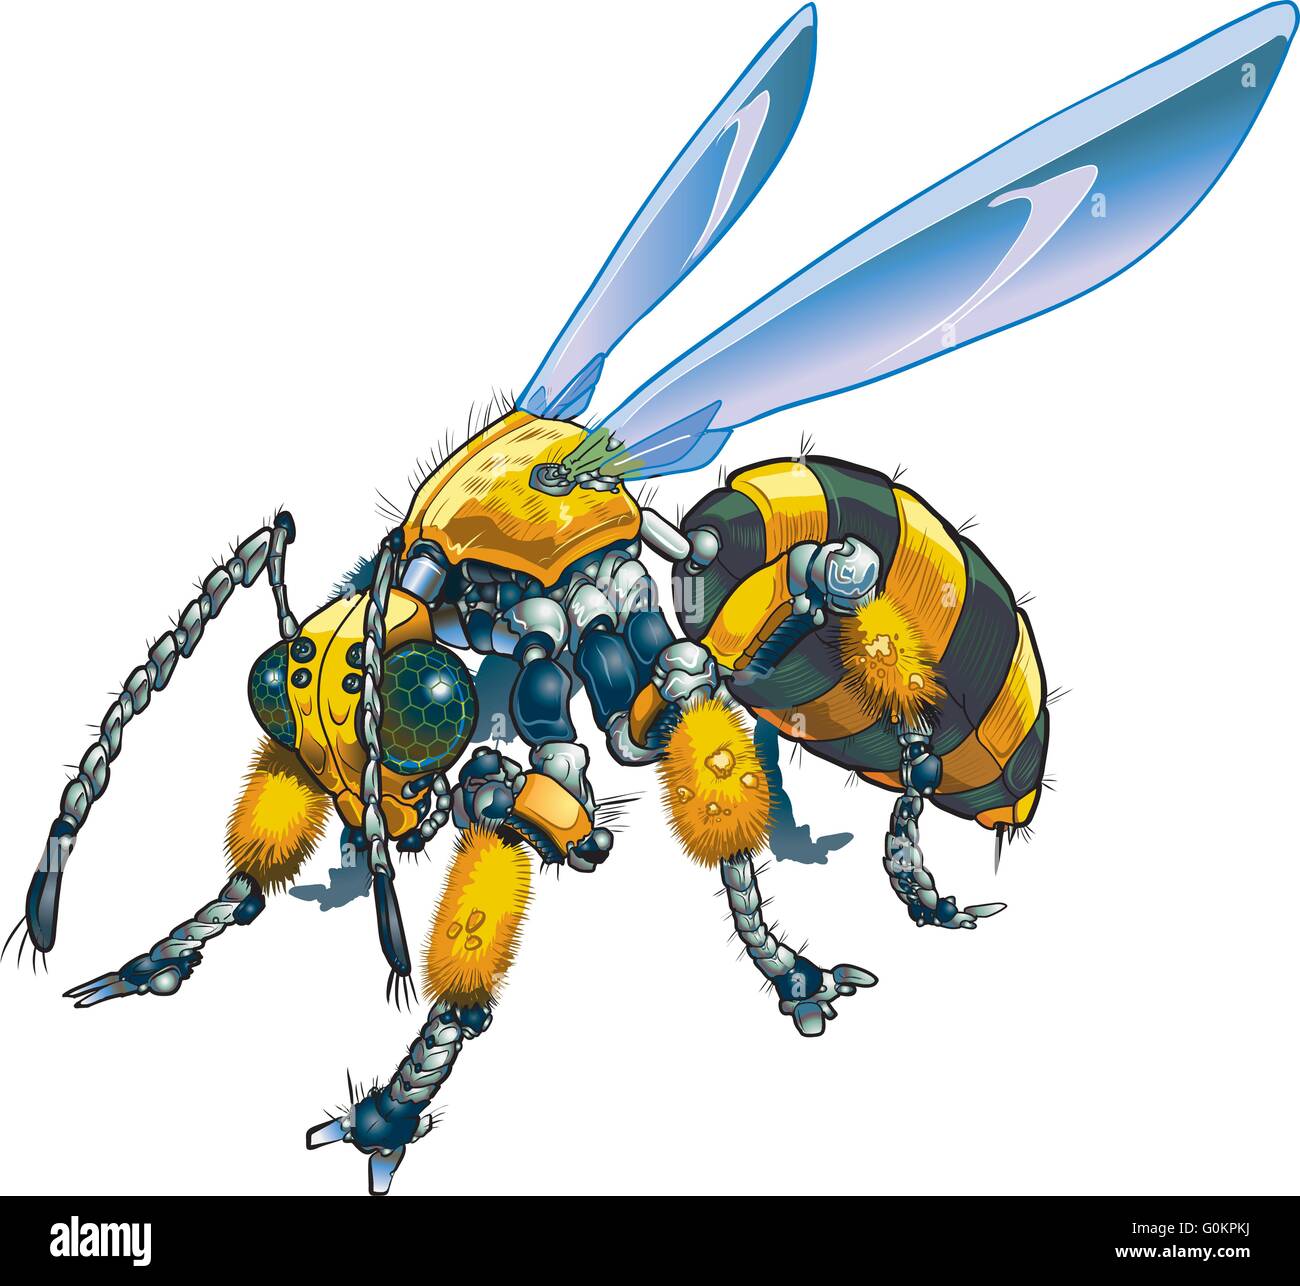 Cartoon-Clip Art Vektorgrafik von einem Roboter Wespe oder Biene. Könnte auch eine konzeptionelle Darstellung der zukünftigen Drohne Technologie. Stock Vektor